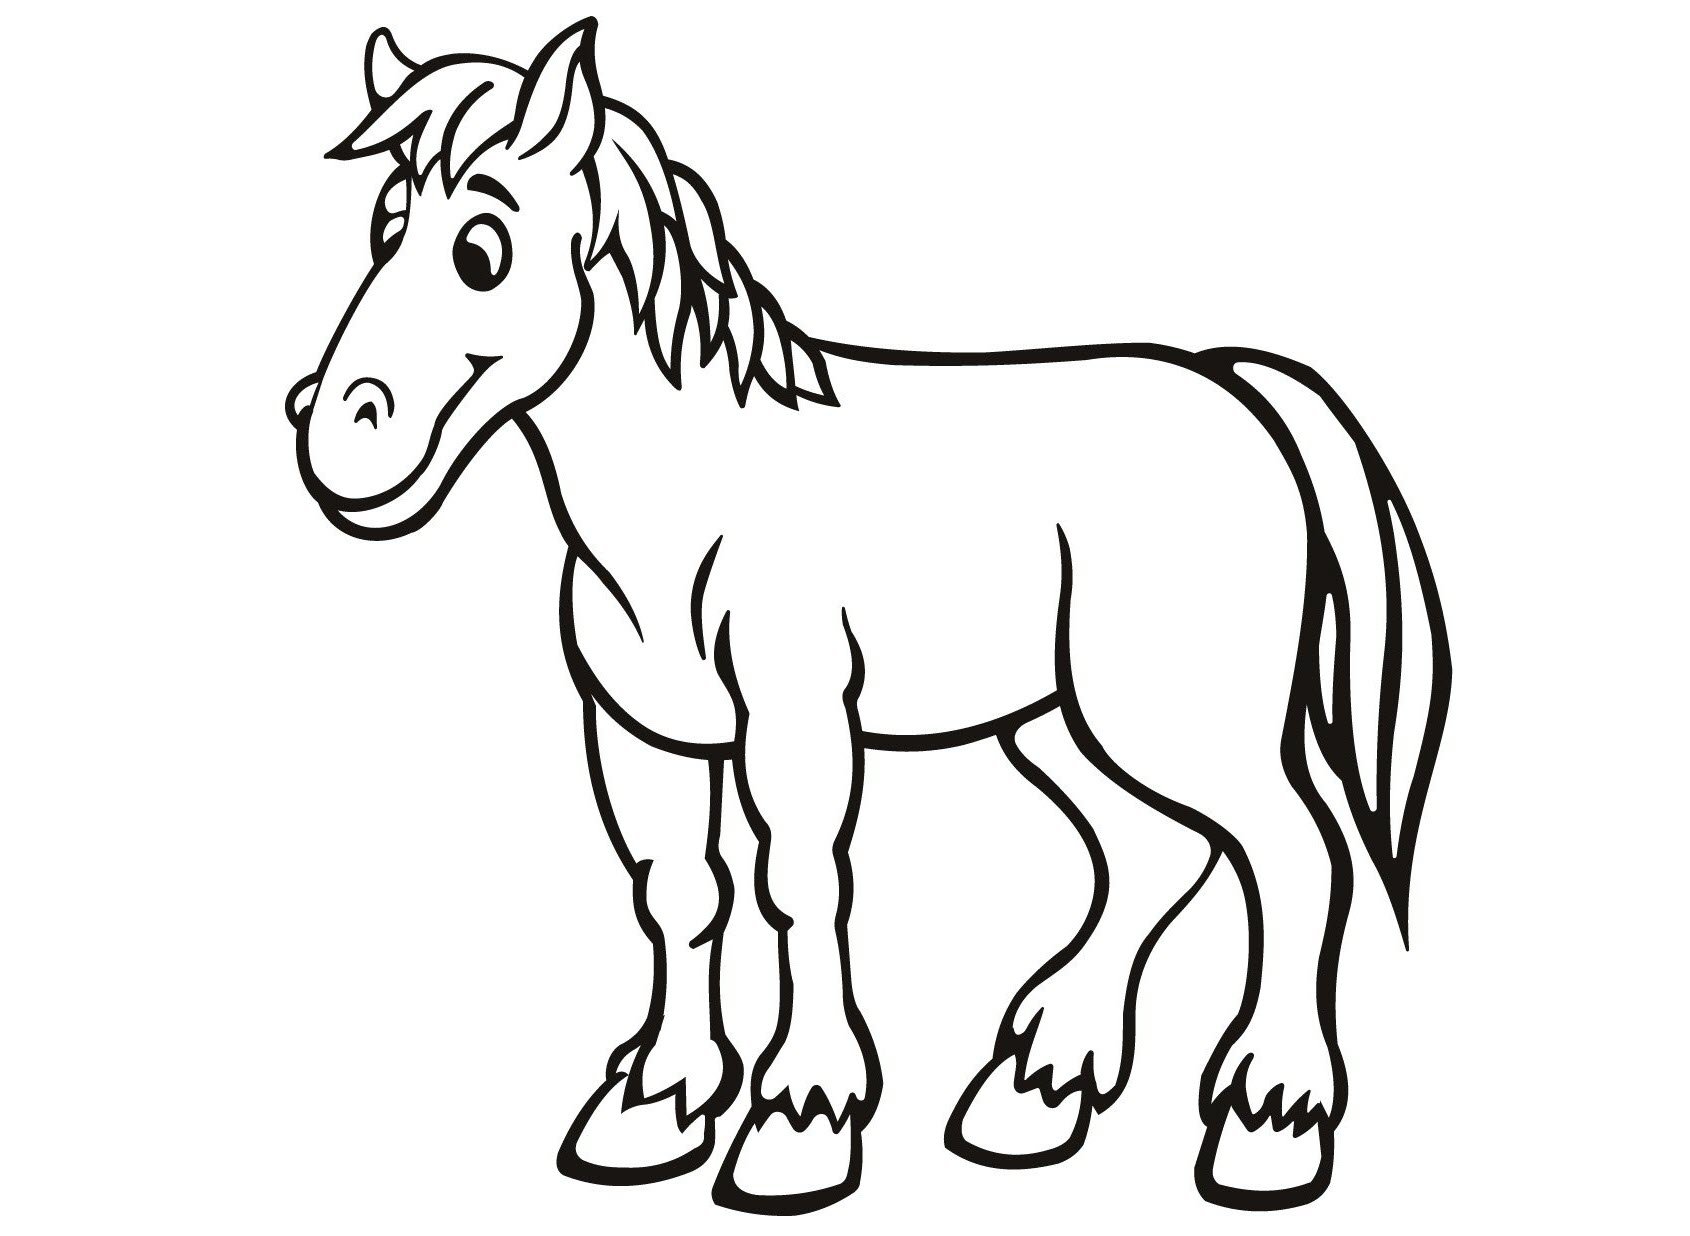 Черно белые картинки для детей раскраска. Лошадь раскраска для детей. Лошадка раскраска для малышей. Лошадь раскраска для малышей. Домашние животные раскраска для детей.